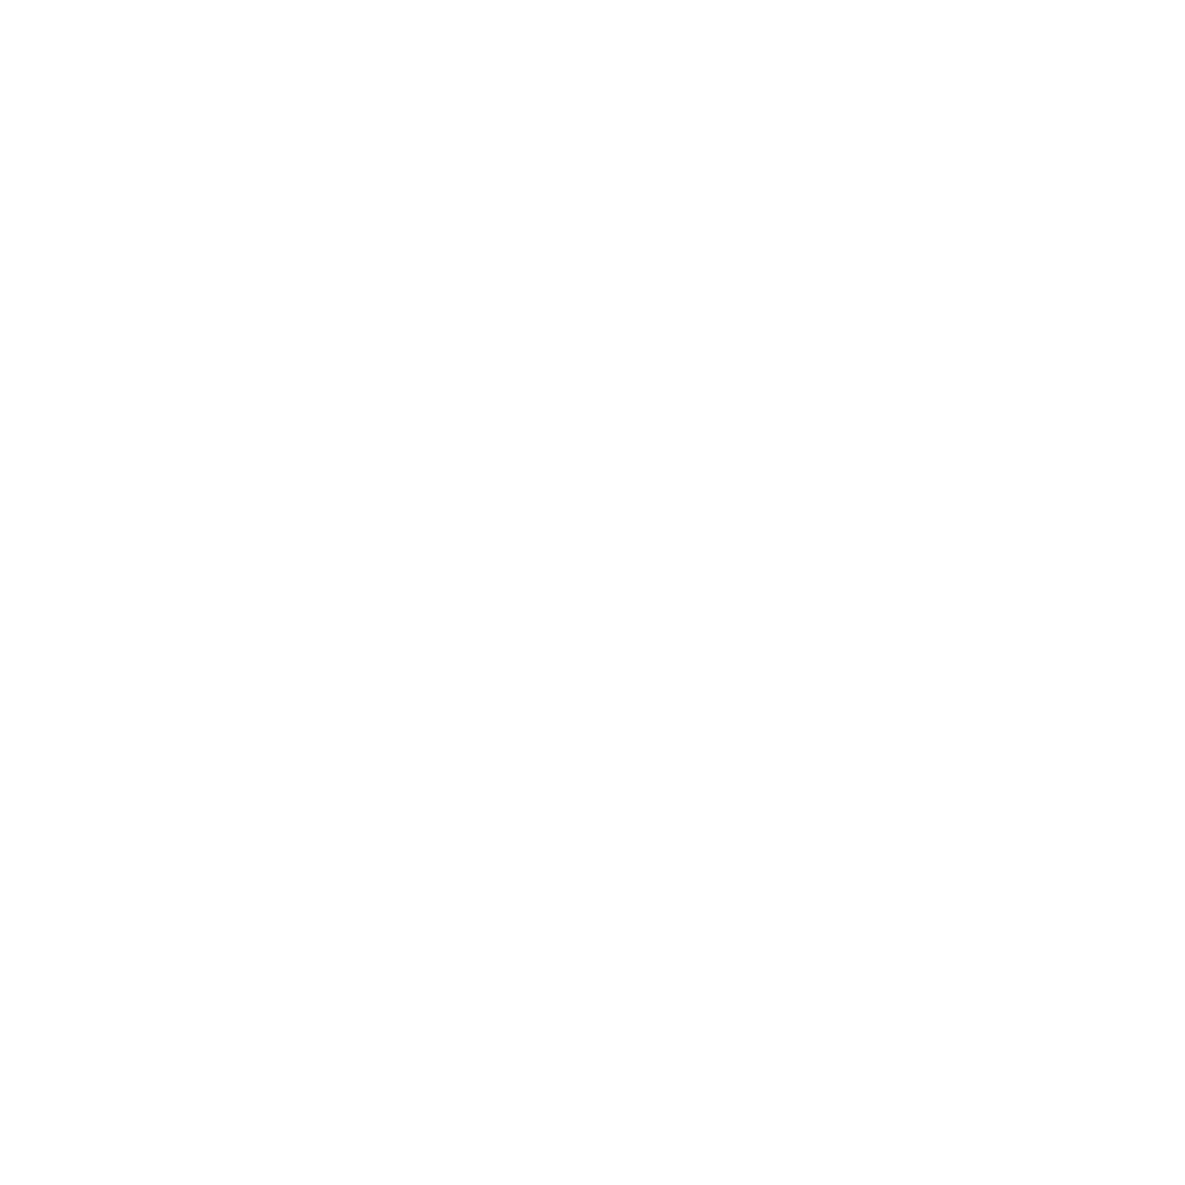 On-orbit updatable